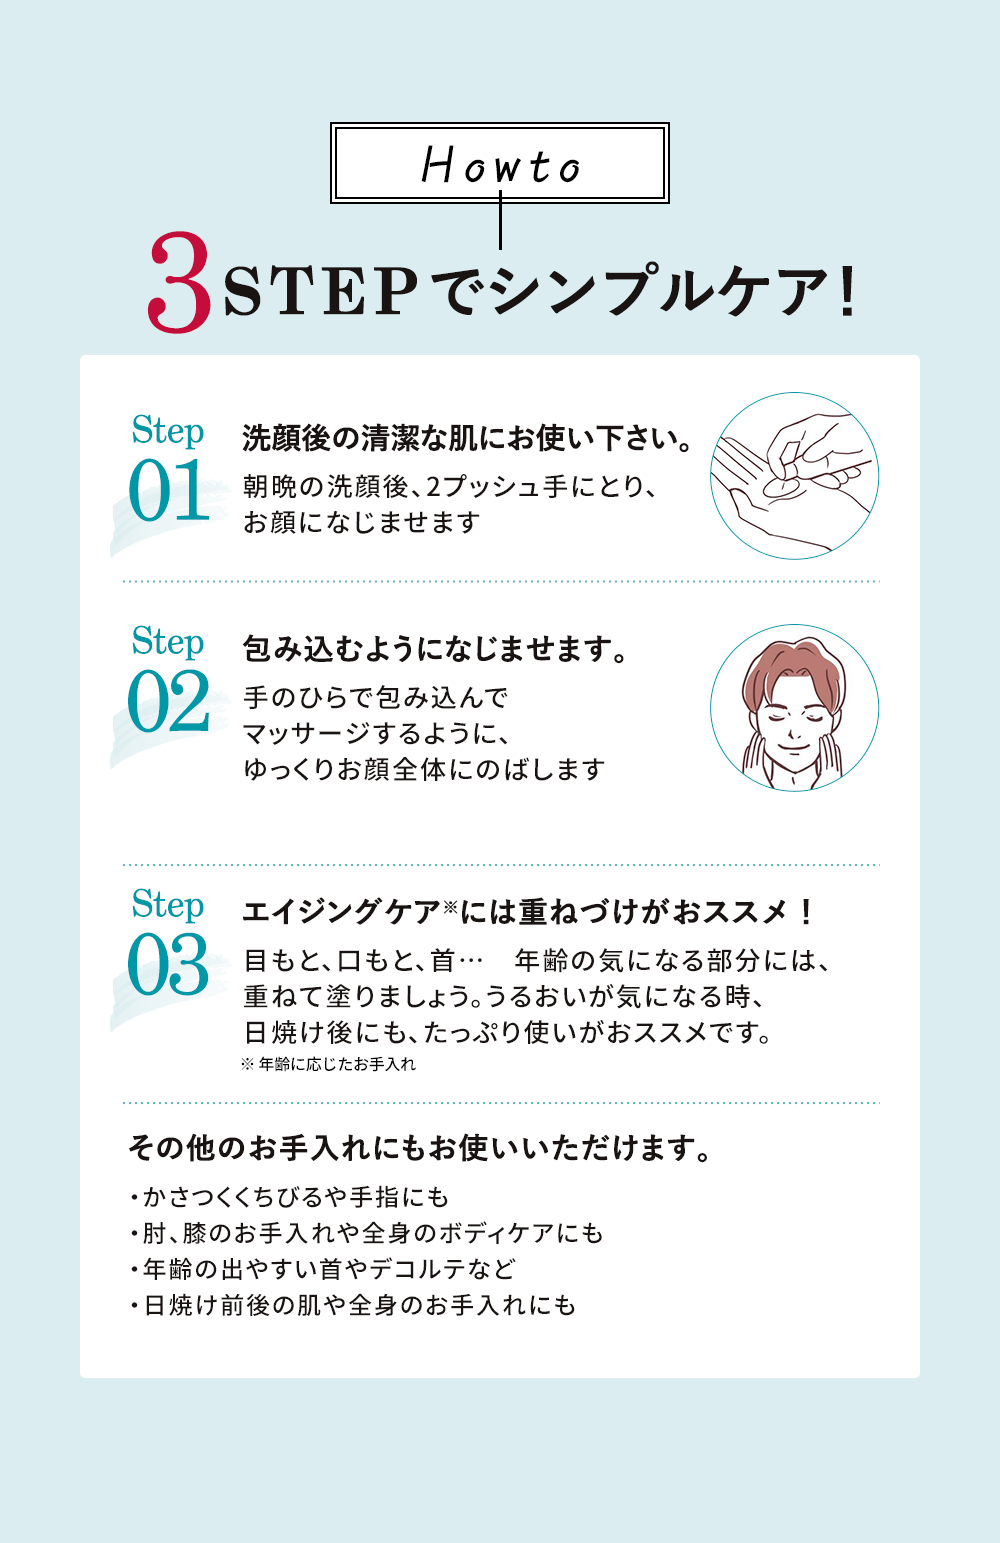 3STEPでシンプルケア！洗顔後の清潔な肌に、包み込むようになじませます。エイジングケアには重ねづけがおススメ！